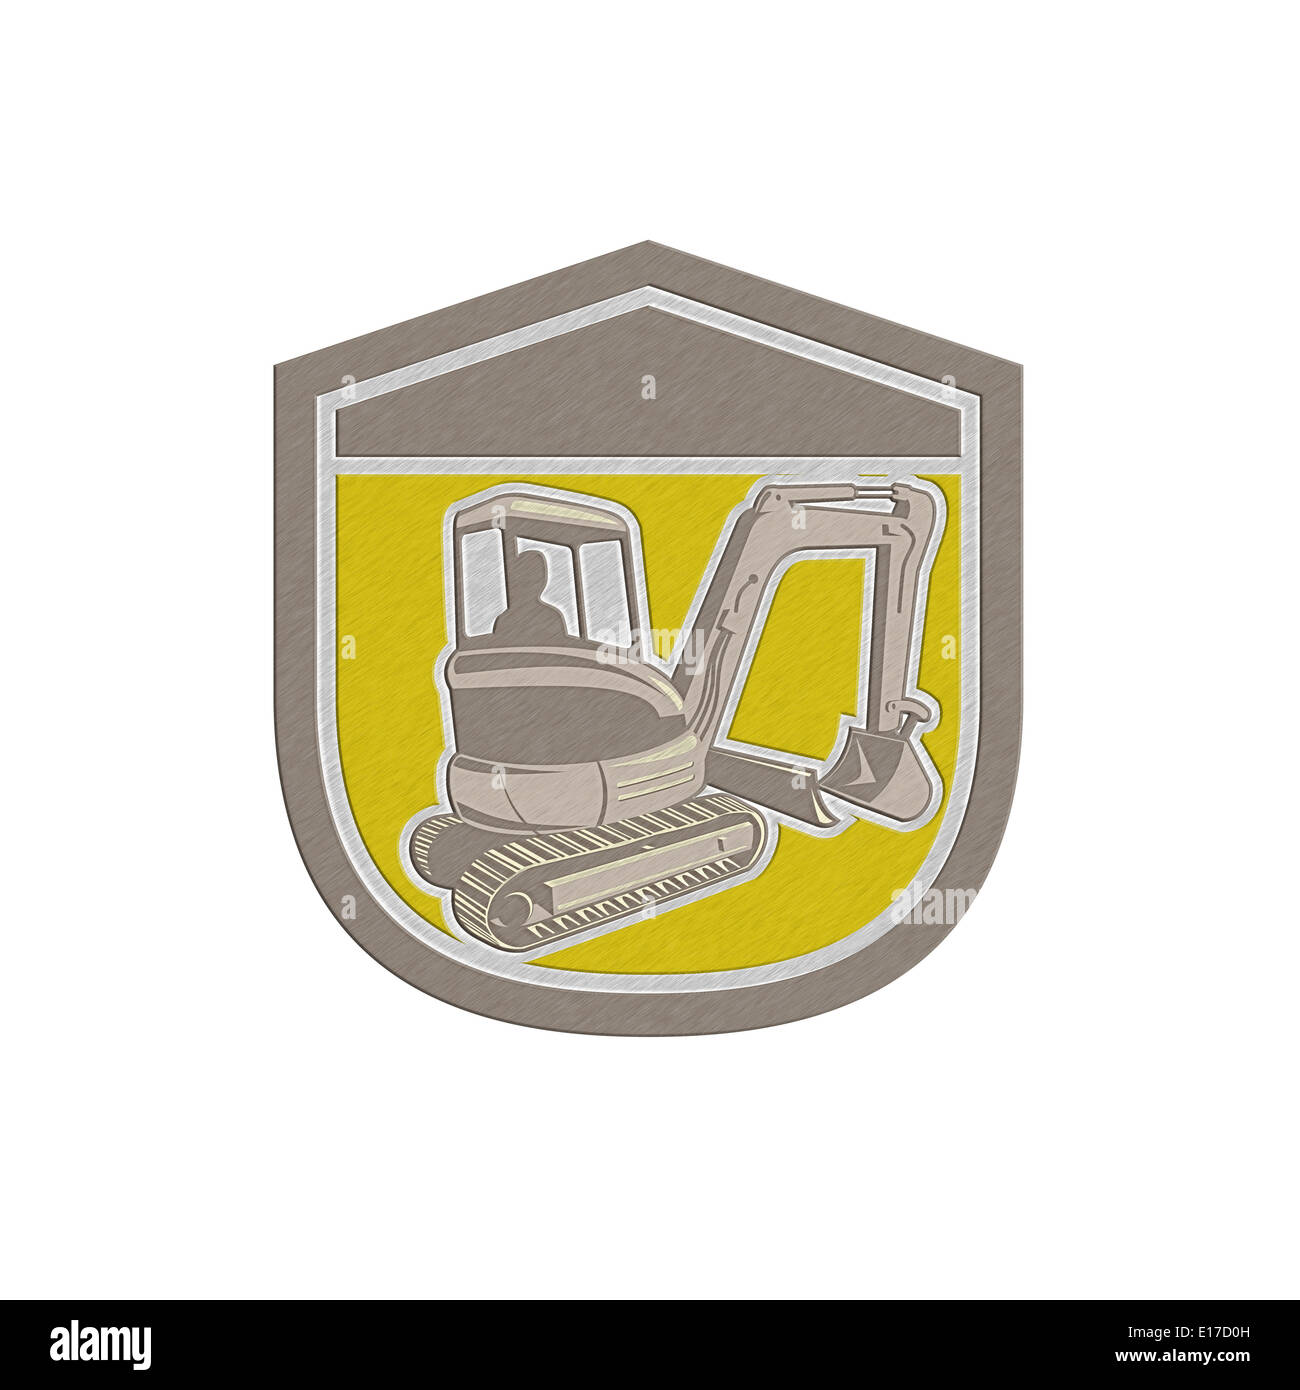 Metallische gestylt Abbildung eines Bau Bagger mechanische Baggers innerhalb Schild Wappen Form auf isolierte Hintergrund festlegen Stockfoto